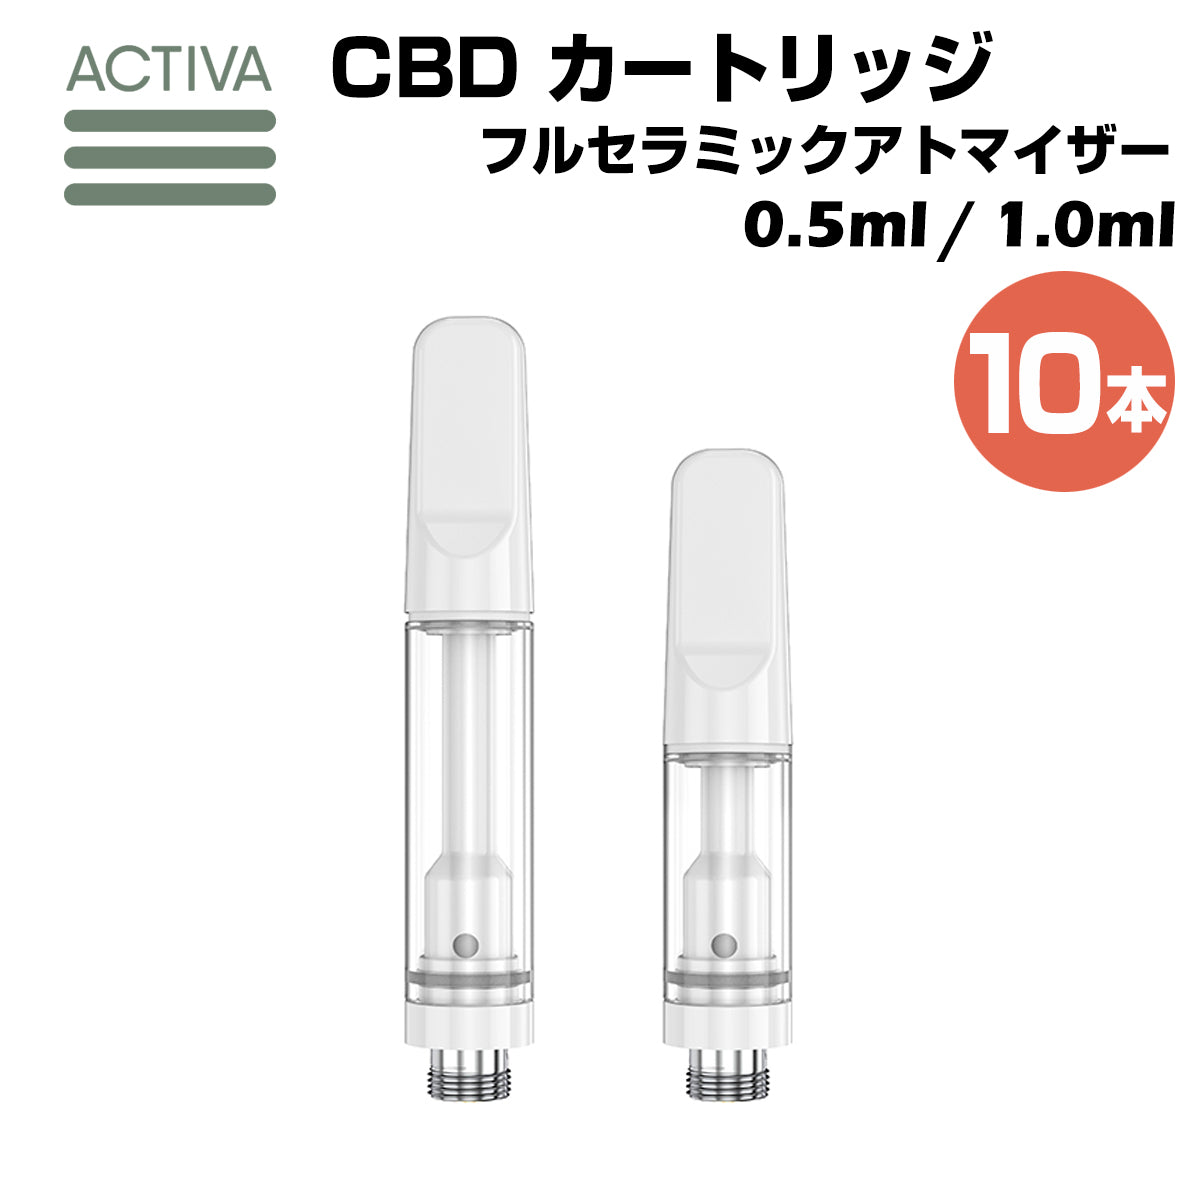 【100本】CBD アトマイザー / カートリッジ【 1.0ml 】ホワイト